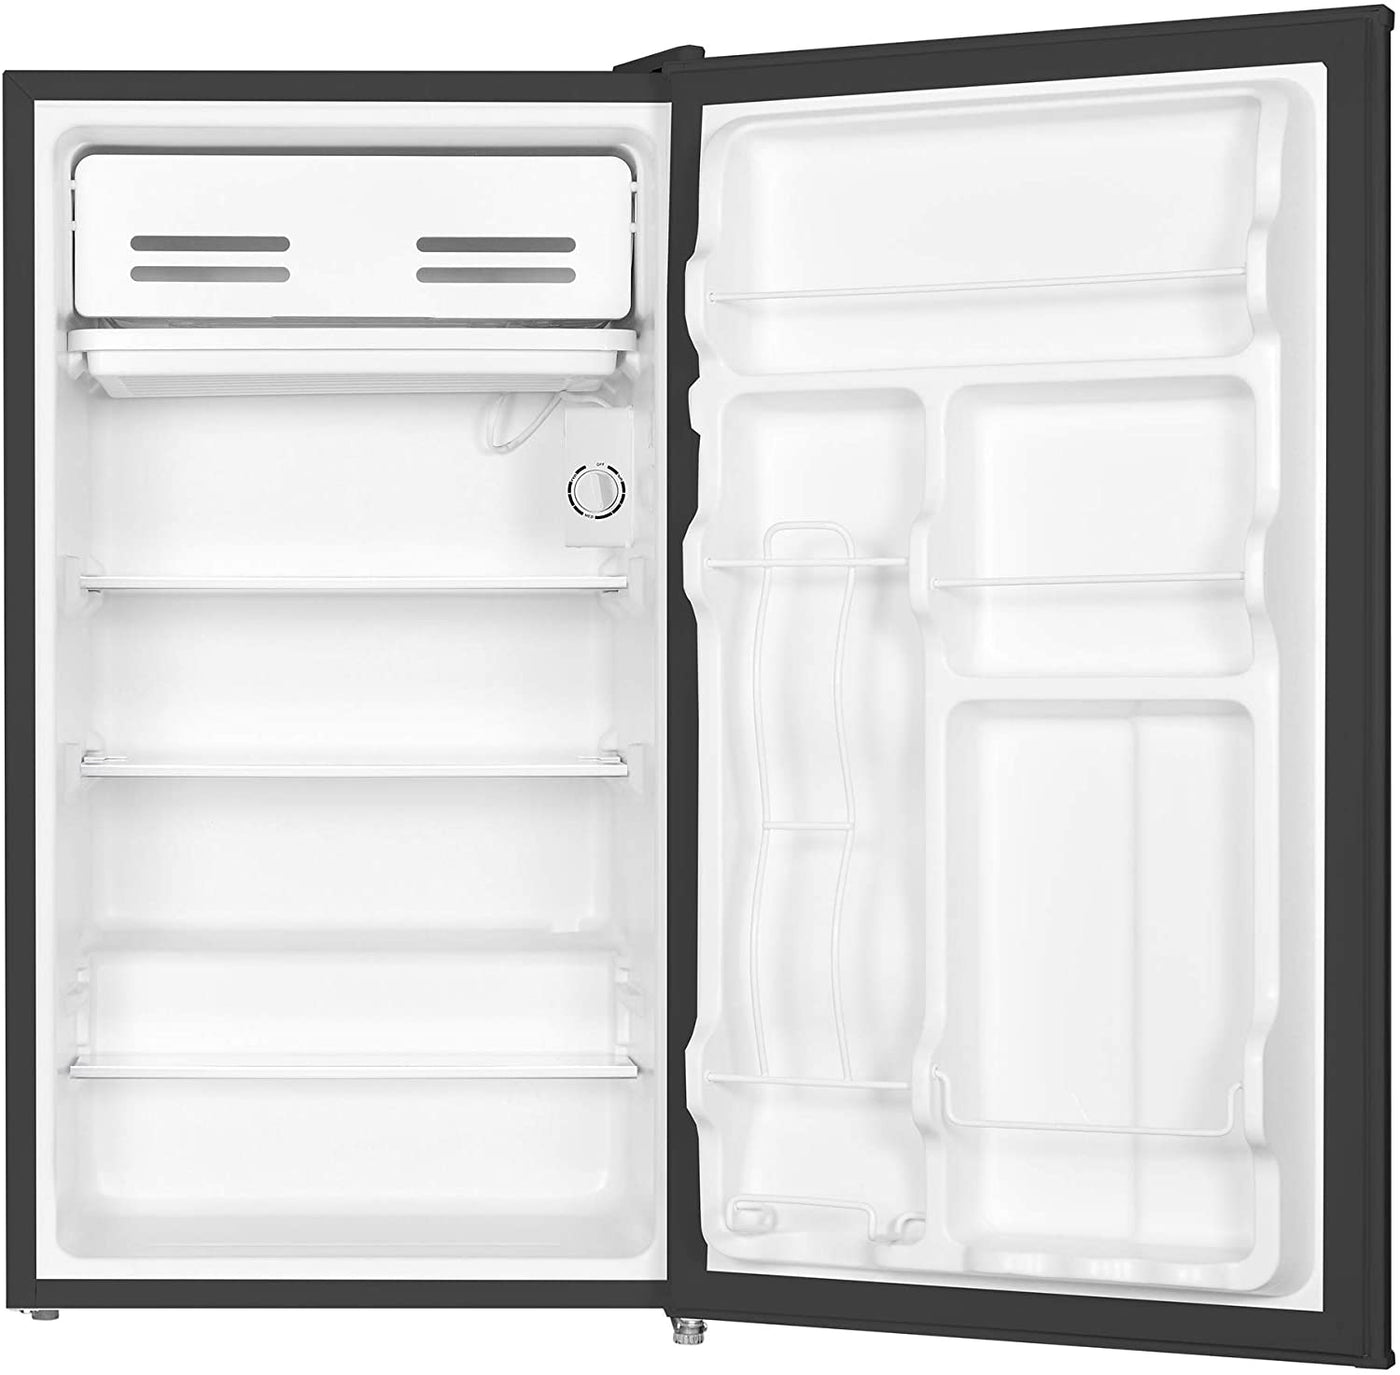 Keytone KSTRC331DB Mini Refrigerator with Freezer, 3.3 Cu. Ft, with 1-Year Warranty